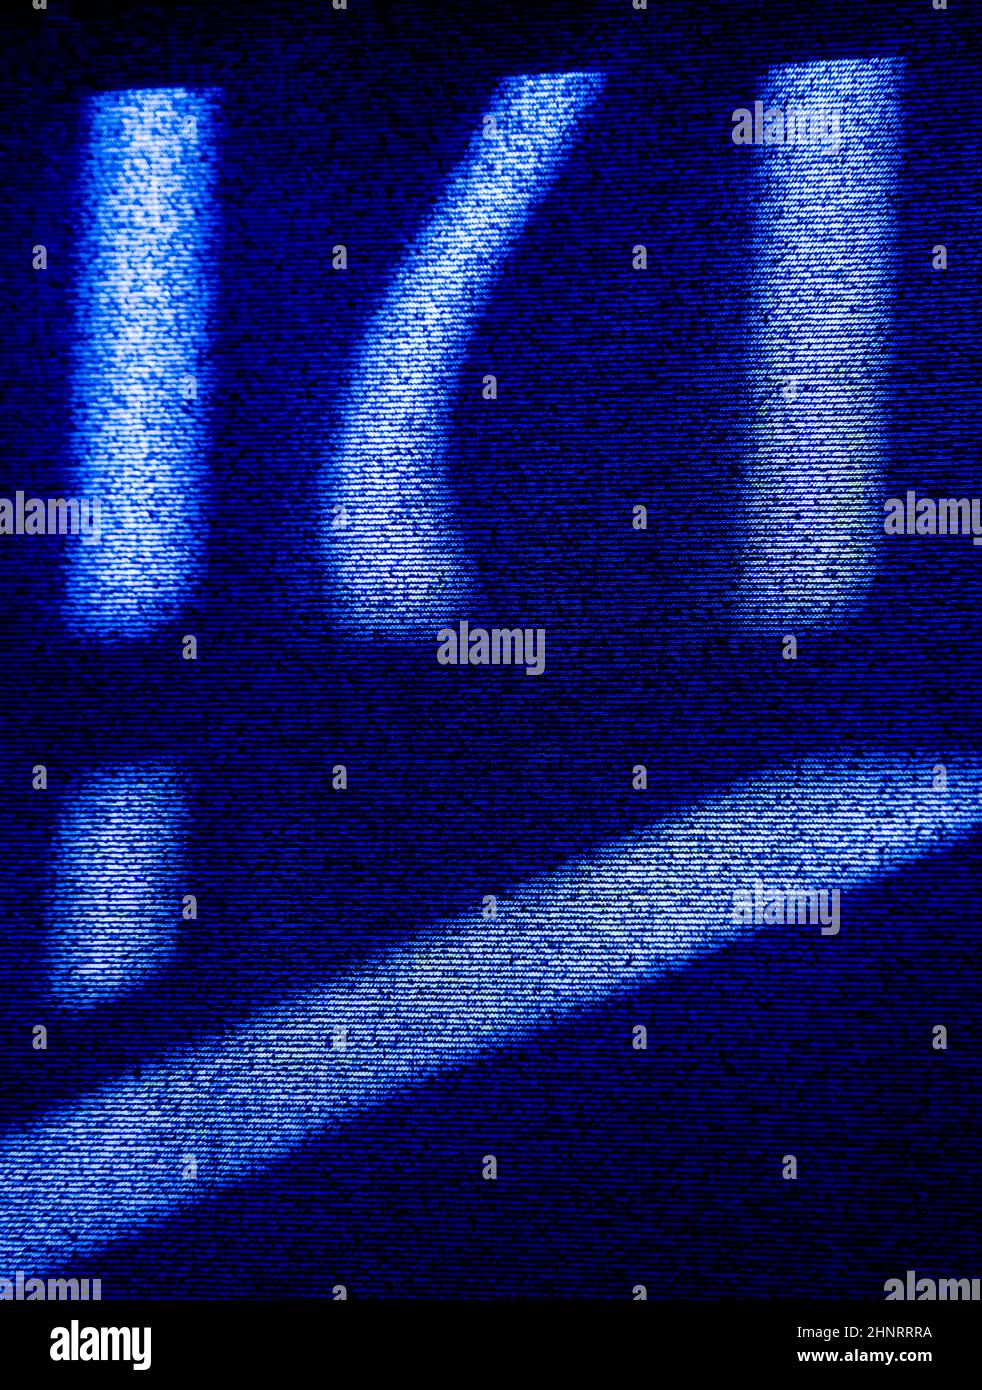 Abstraktes Design mit blauen Linien und symbolförmigen Schatten auf schwarzem Fensterblind aus Nachmittagssonne strukturiertem Hintergrund oder vertikalem Hintergrund-Format Stockfoto